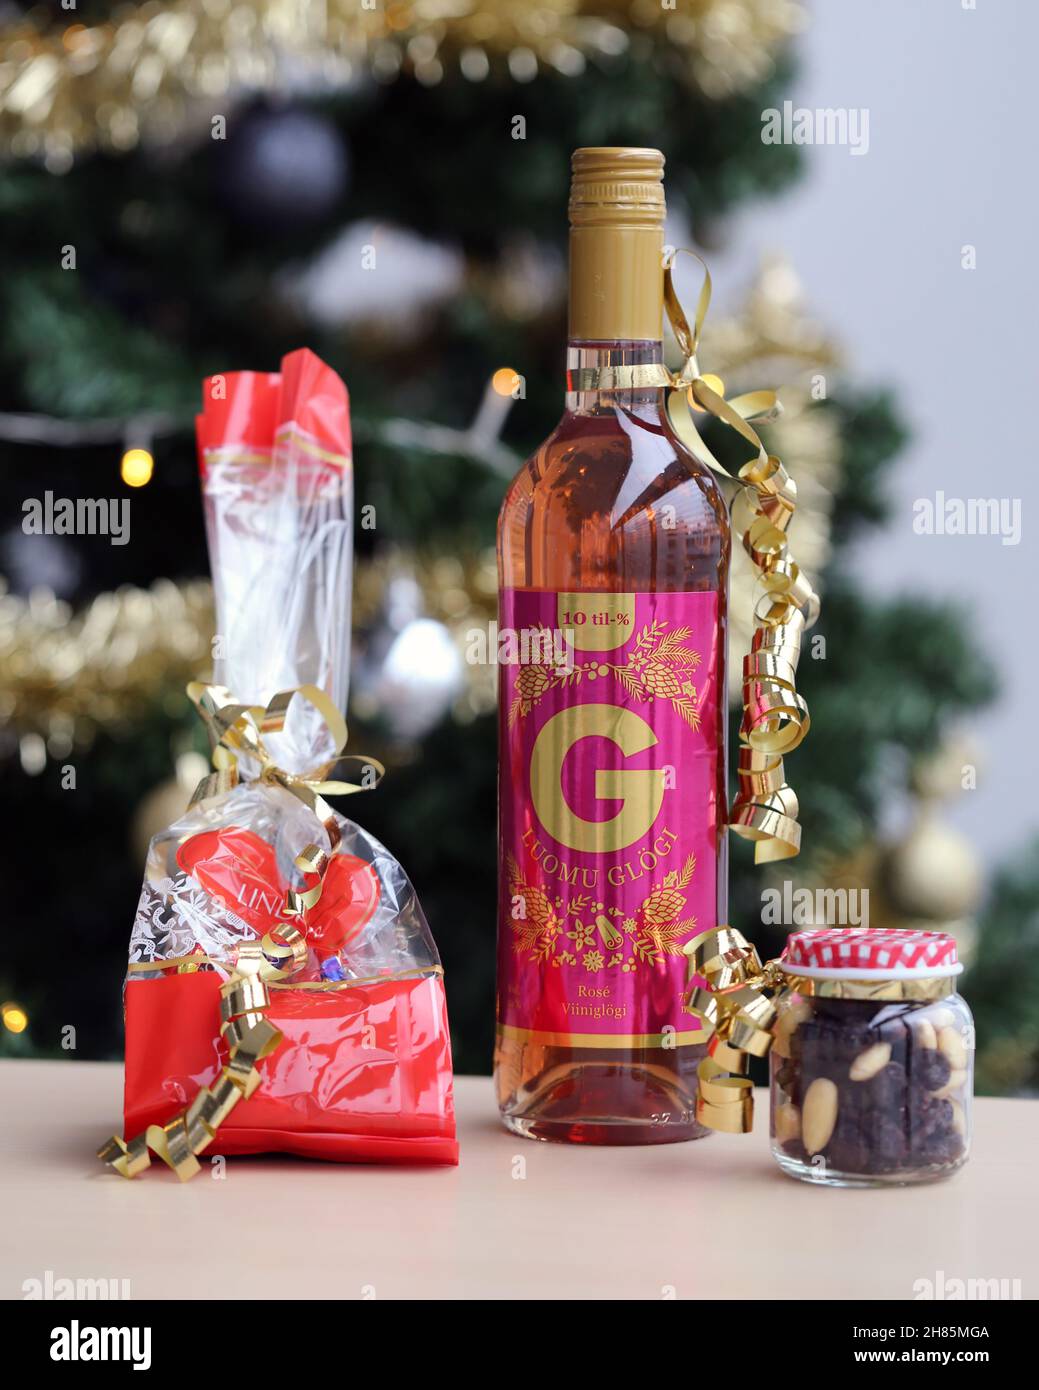 Luomu Rose Glögi - ein traditionelles organisch-alkoholisches finnisches Glogg-Getränk mit Lindt-Schokolade, Rosinen und Mandeln auf einem Tisch mit einem Weihnachtsbaum. Stockfoto